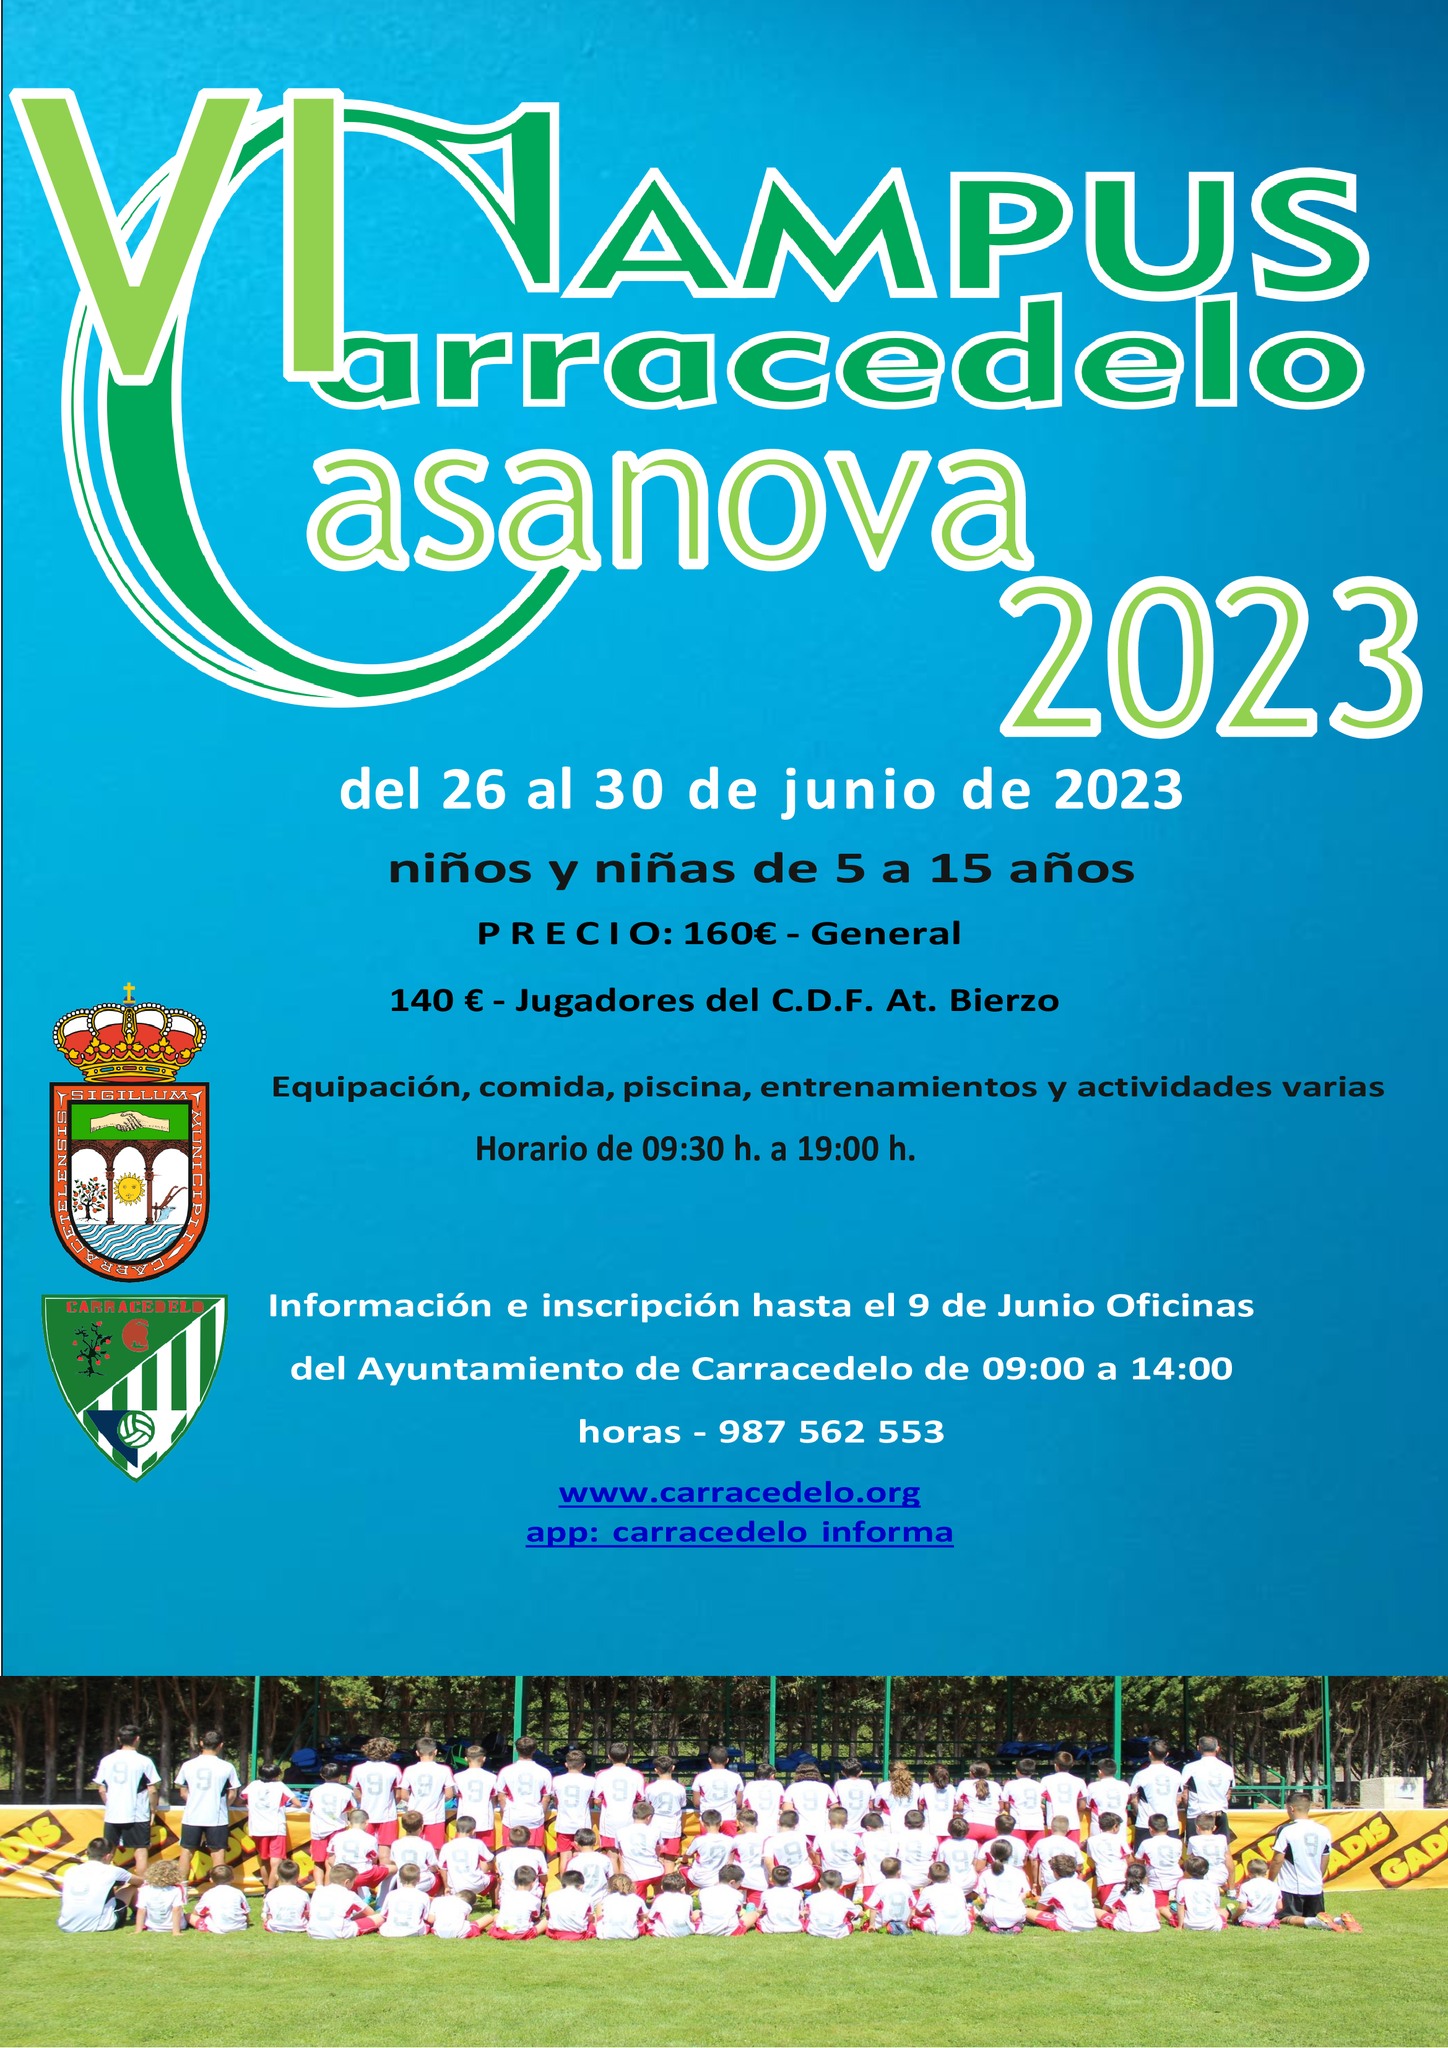 Campamentos y Campus de verano 2023 en Ponferrada y El Bierzo 7